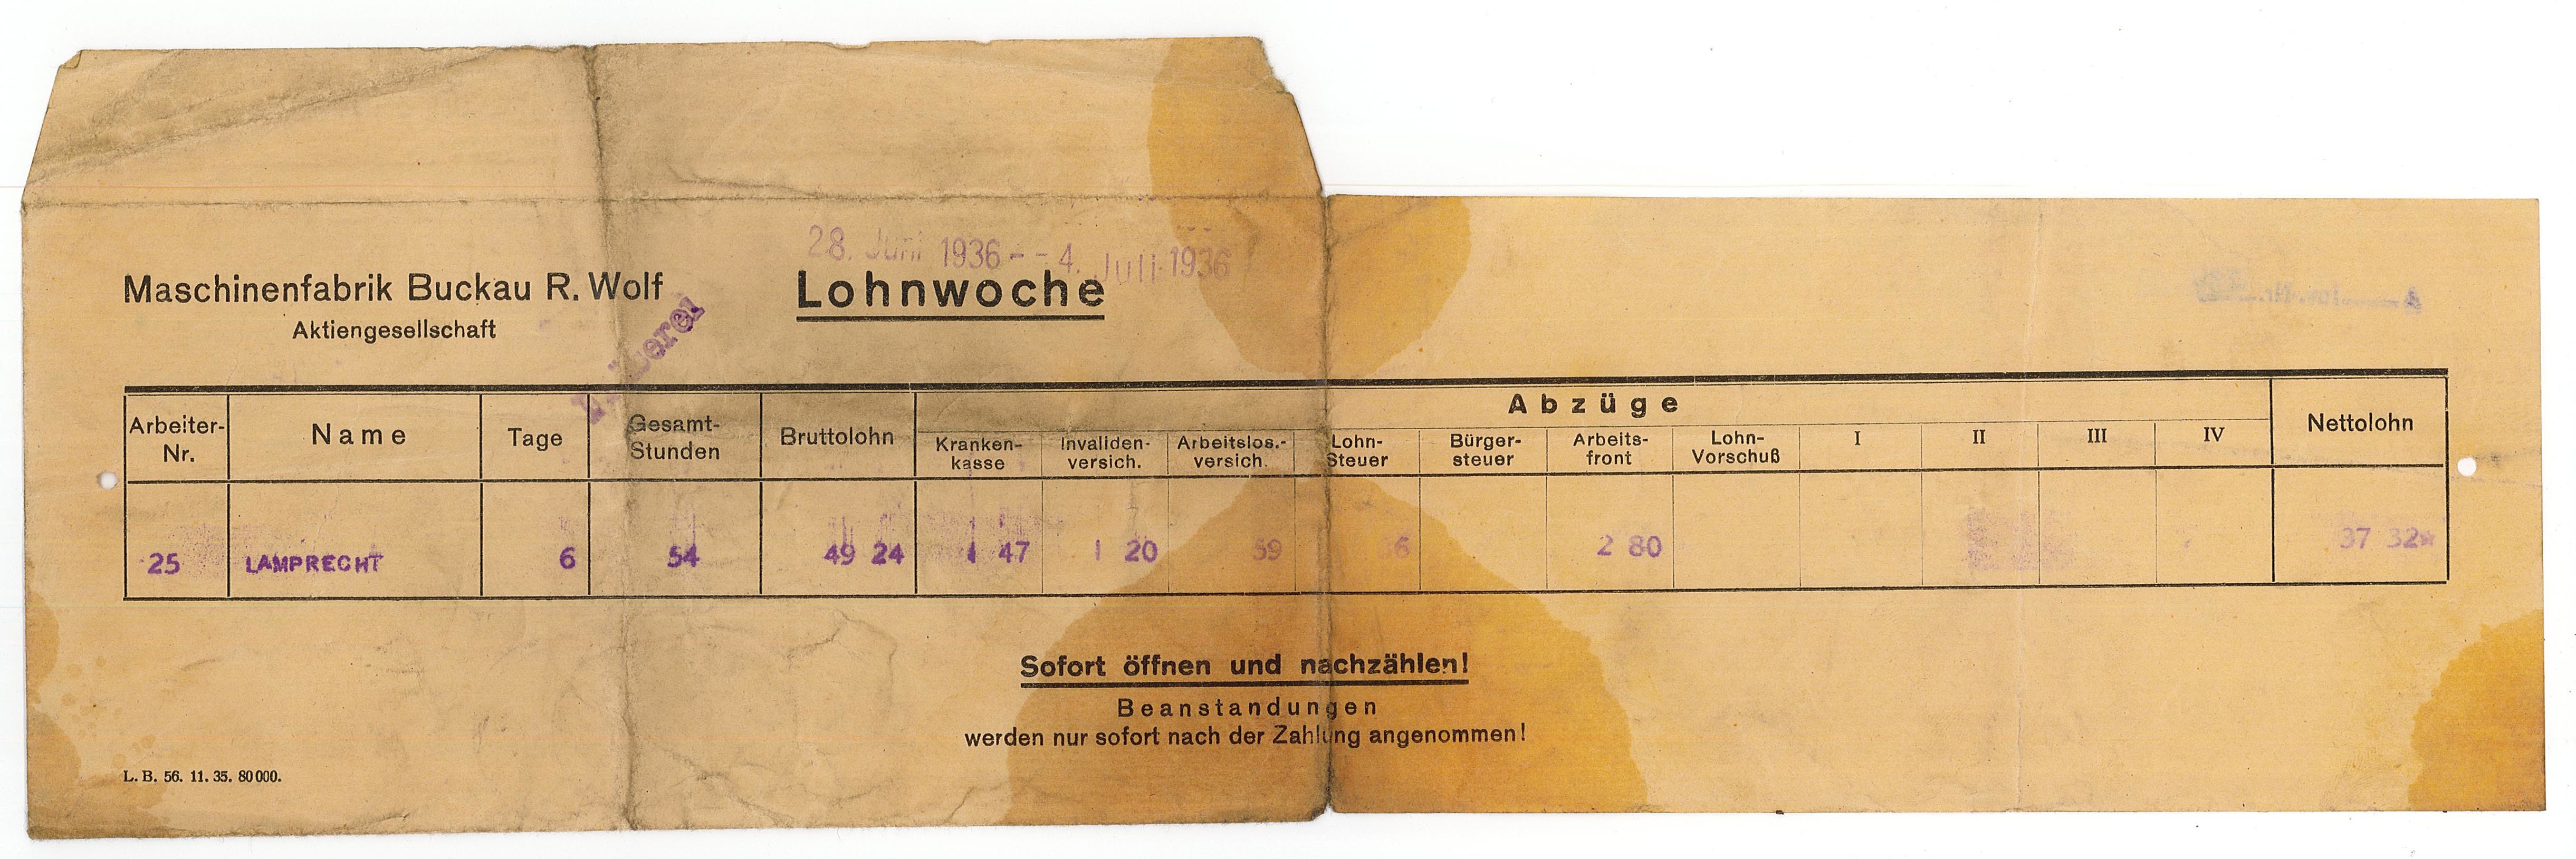 Lohntüte der Maschinenfabrik Buckau für Lamprecht, Juni/Juli 1936 (Museum Wolmirstedt RR-F)